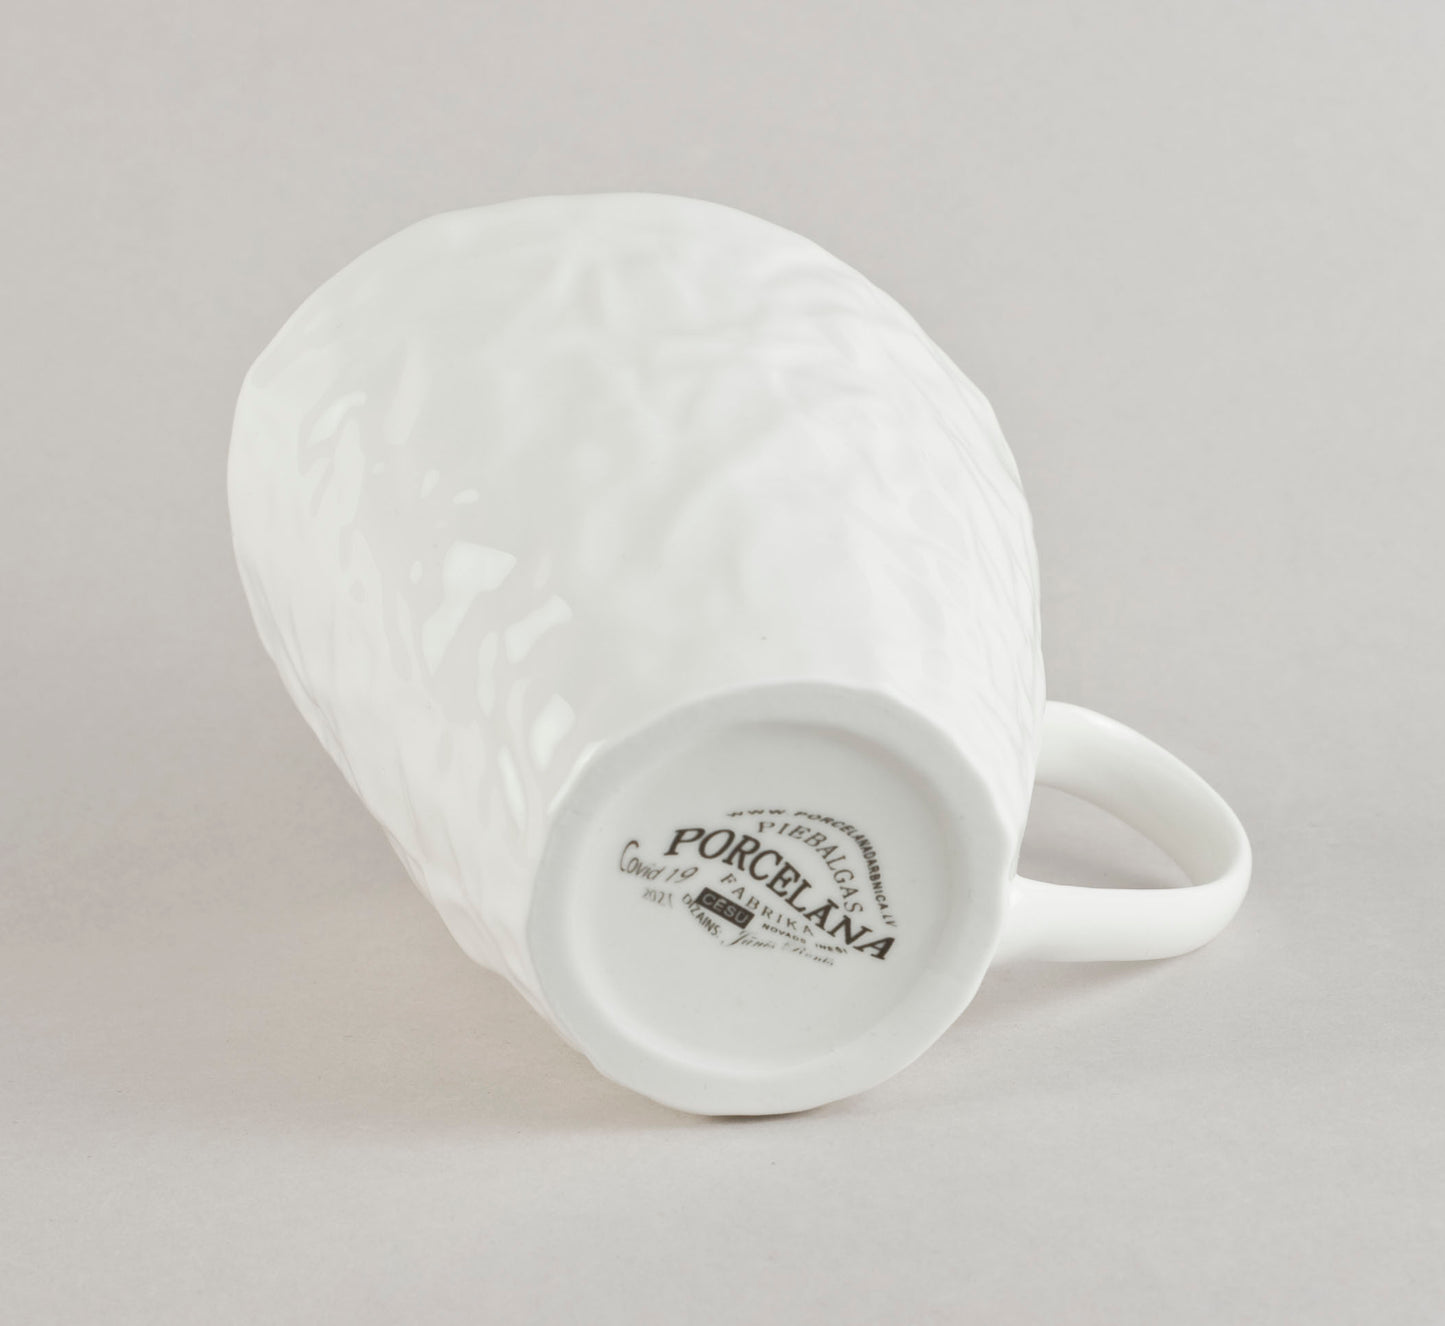 Covid 2.2. Crumpled Tea Co Mug